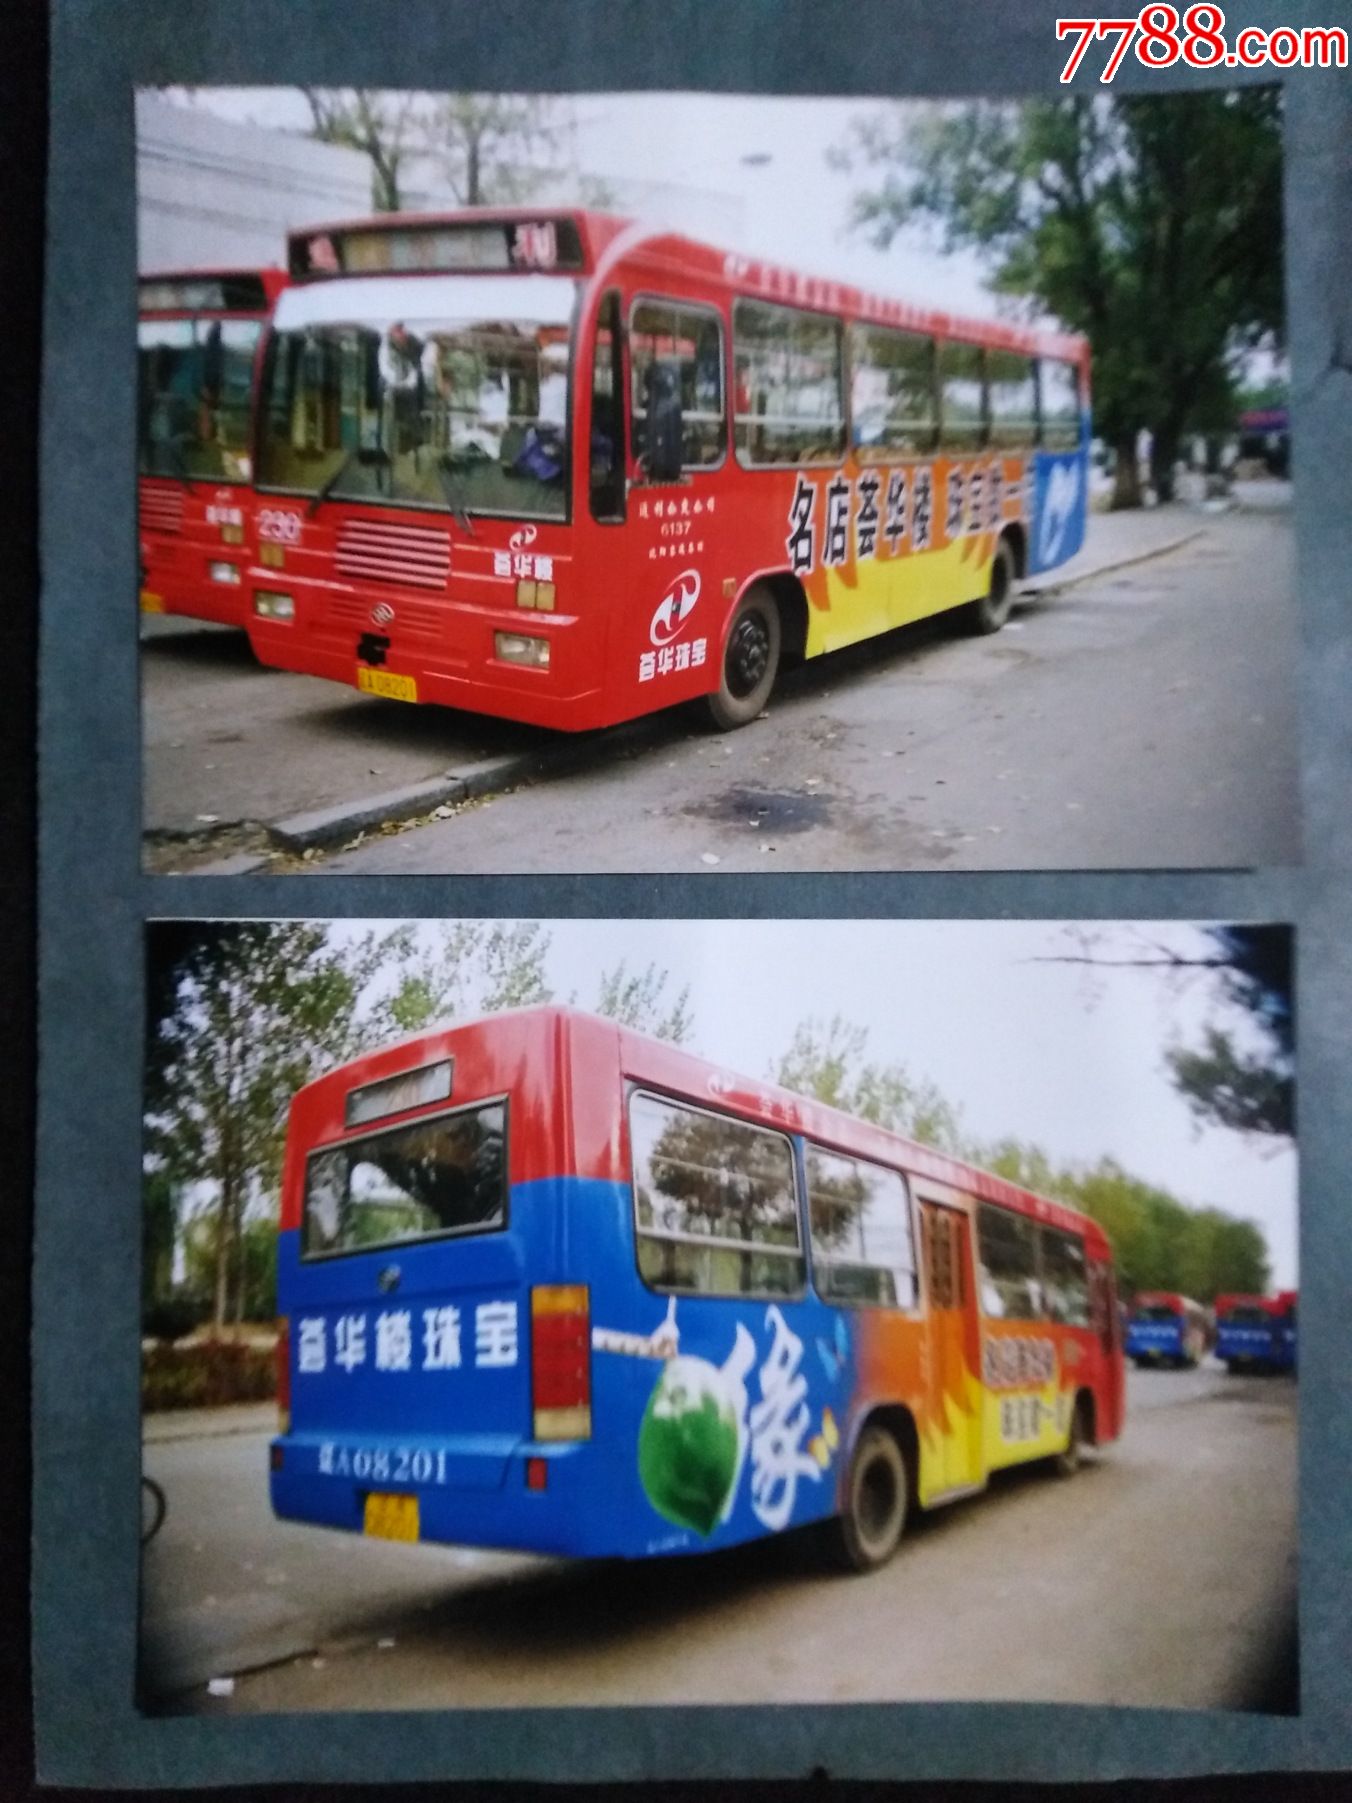 沈阳公交车"230路,为金店做广告,2张